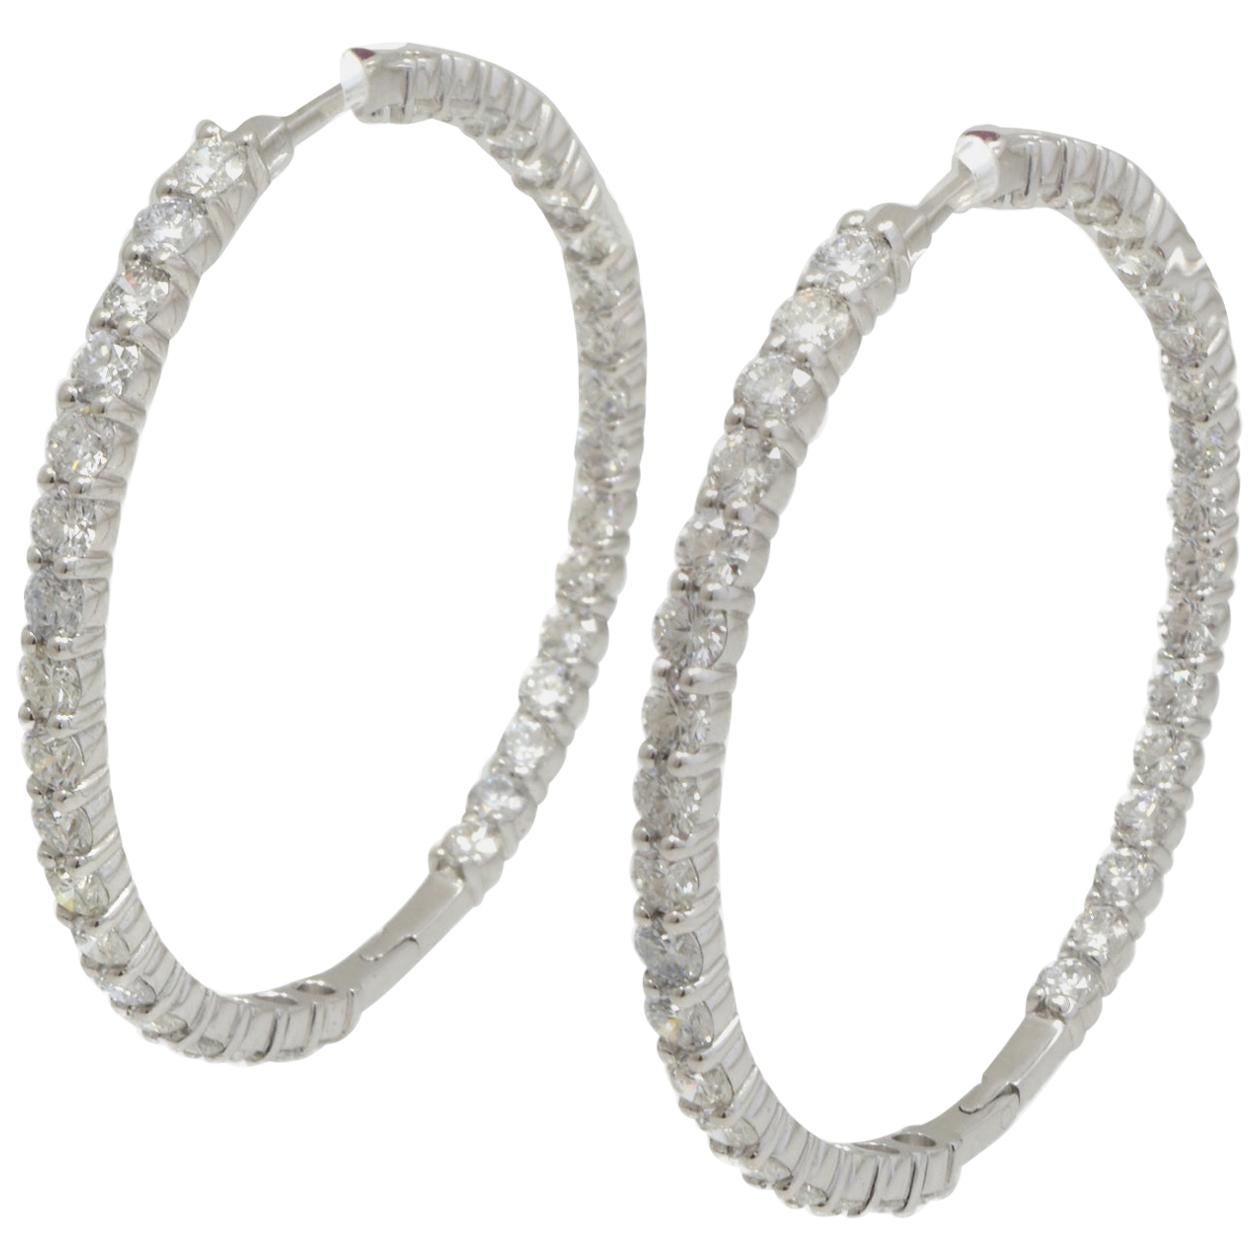 Roberto Coin Créoles parfaites en or blanc 18 carats avec diamants à l'intérieur et extérieur de l'anneau